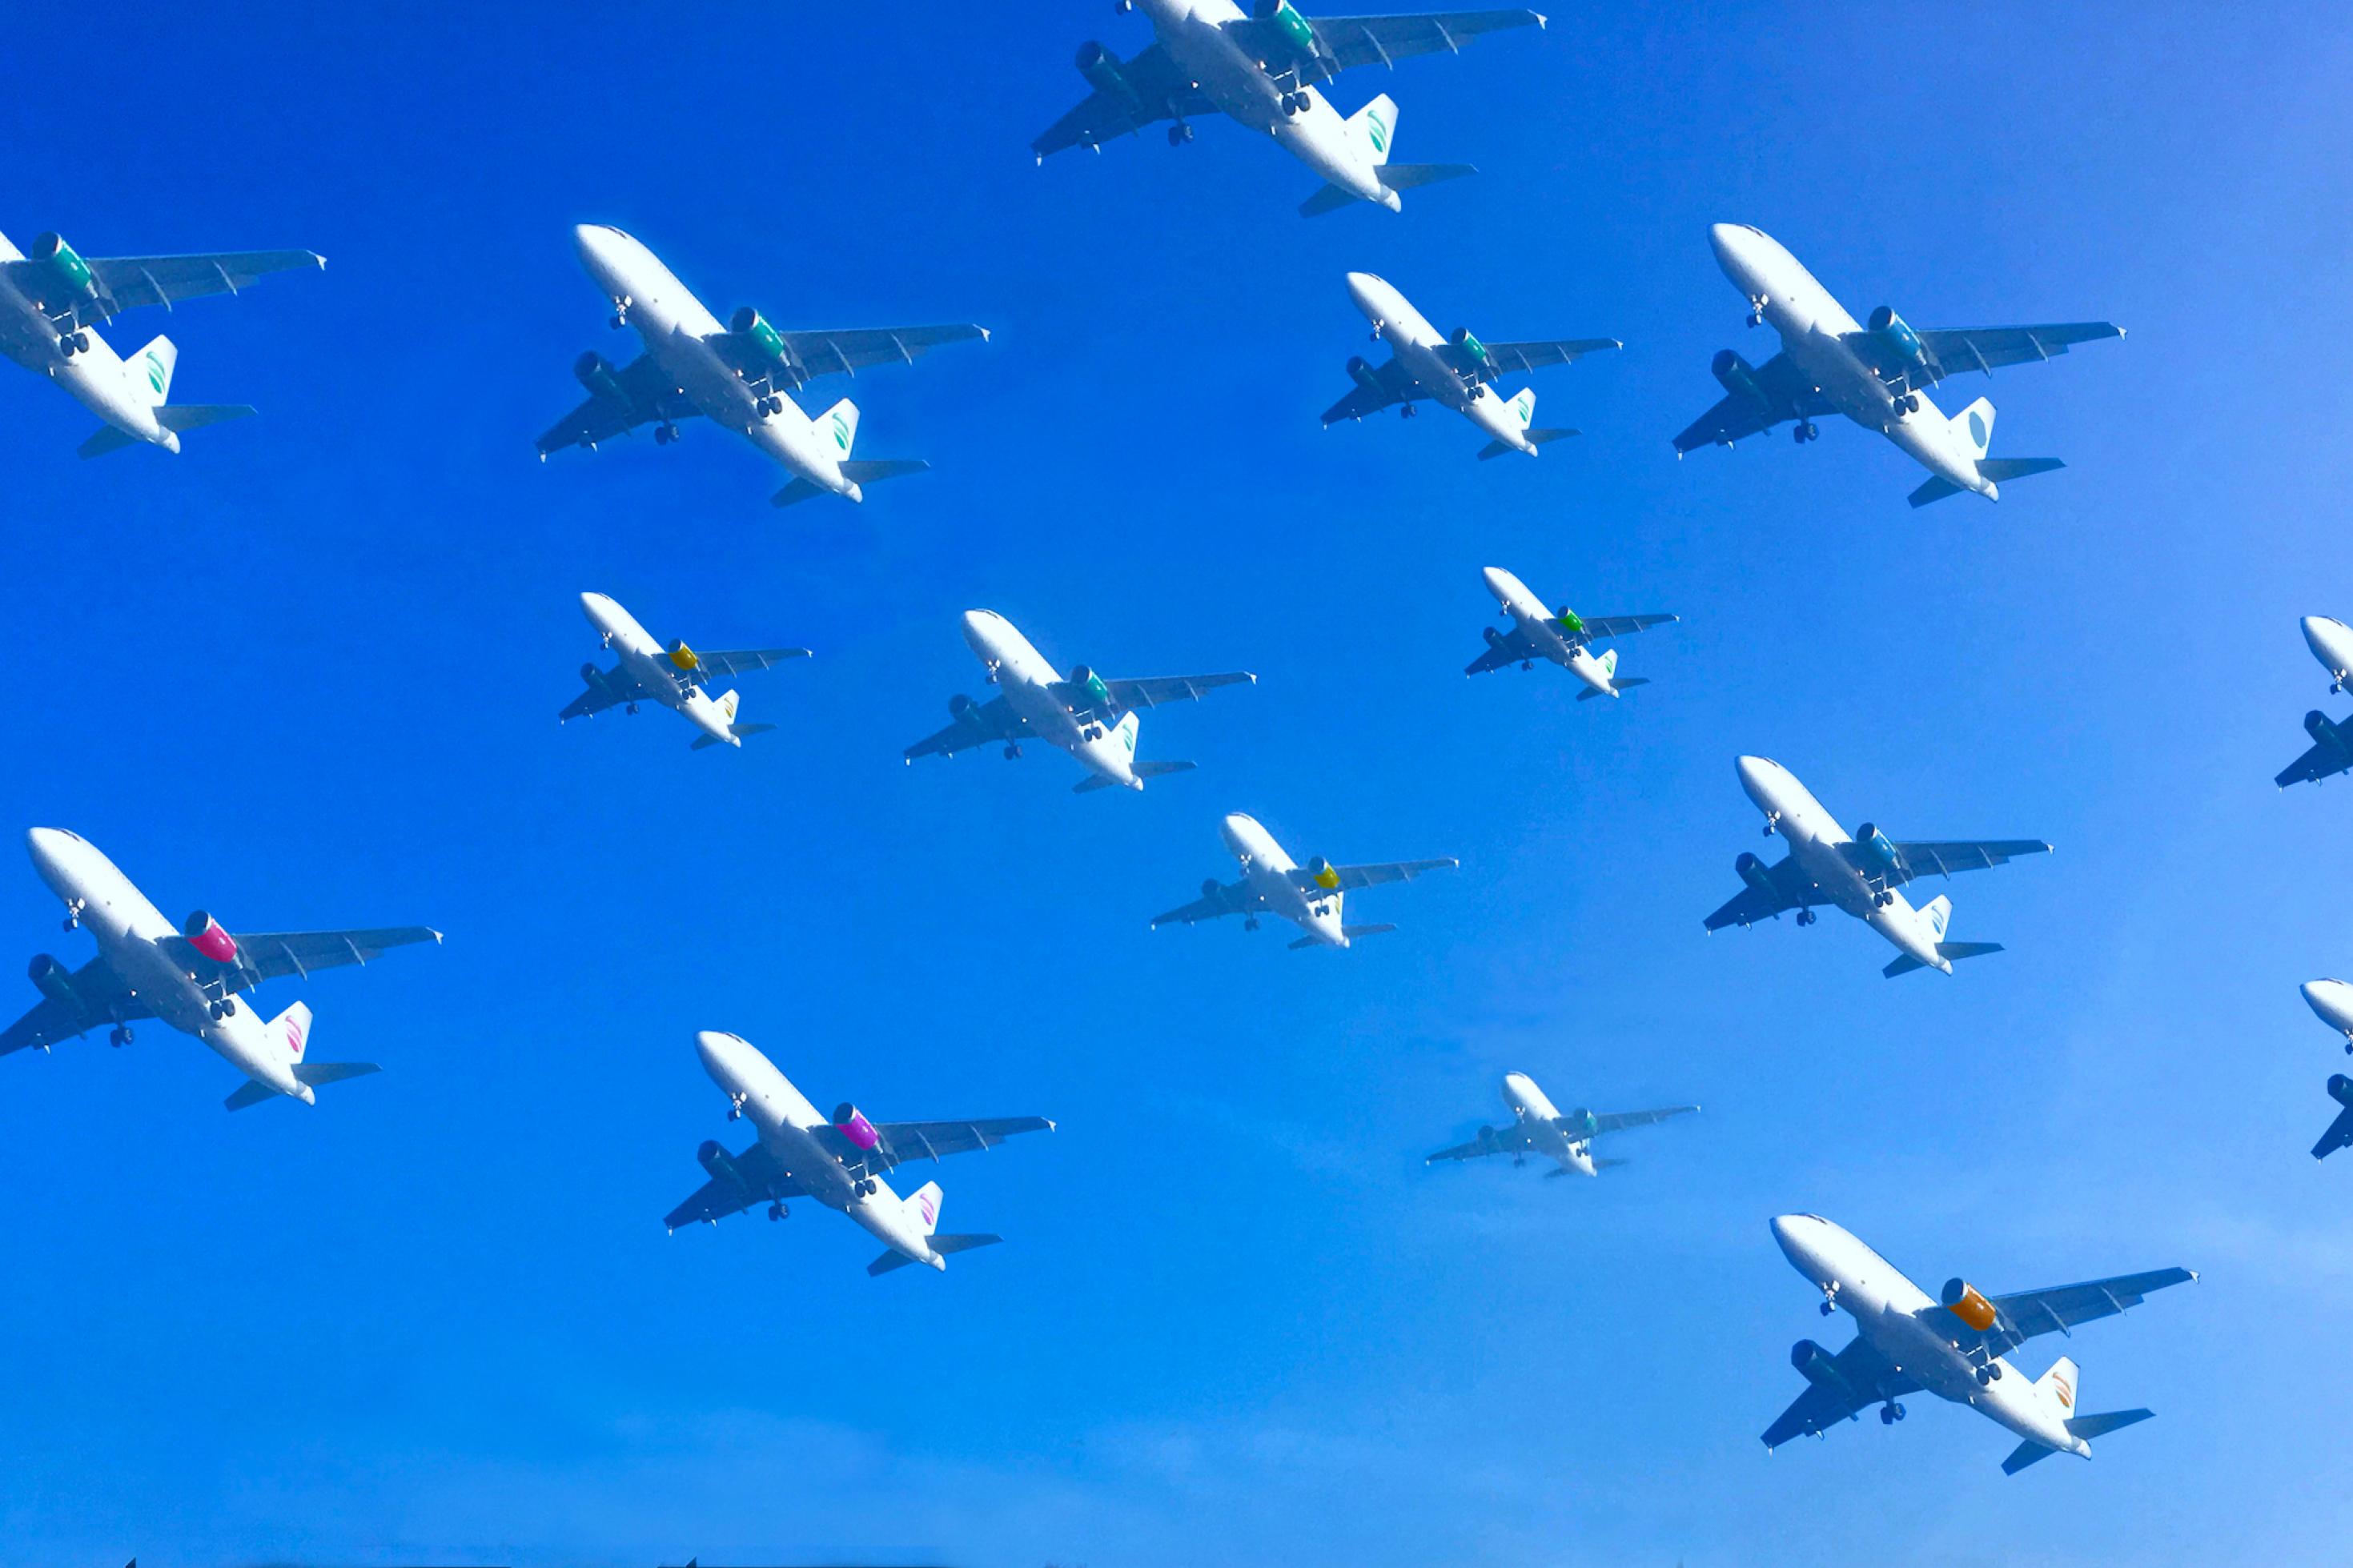 An einem blauen Himmel schwebt in dieser Fotomontage mehr als ein Dutzend Flugzeuge dicht nebeneinander auf den Landeplatz zu.